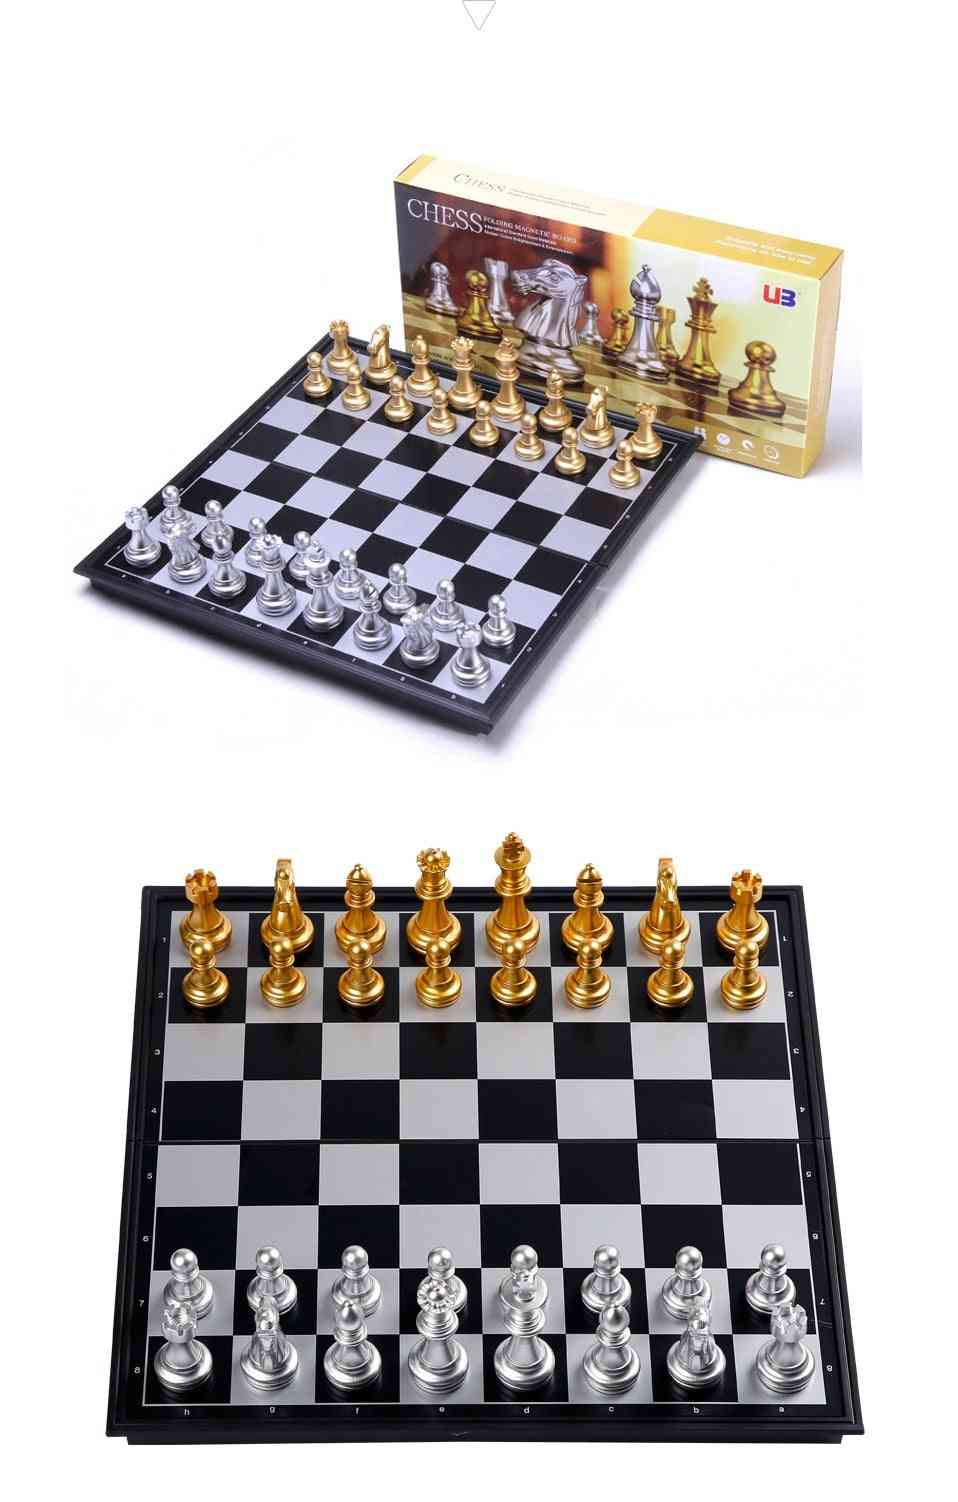 סט שחמט מימי הביניים עם זהב לוח שחמט, חתיכות כסף, לוח משחק מגנטי (עם קופסה)